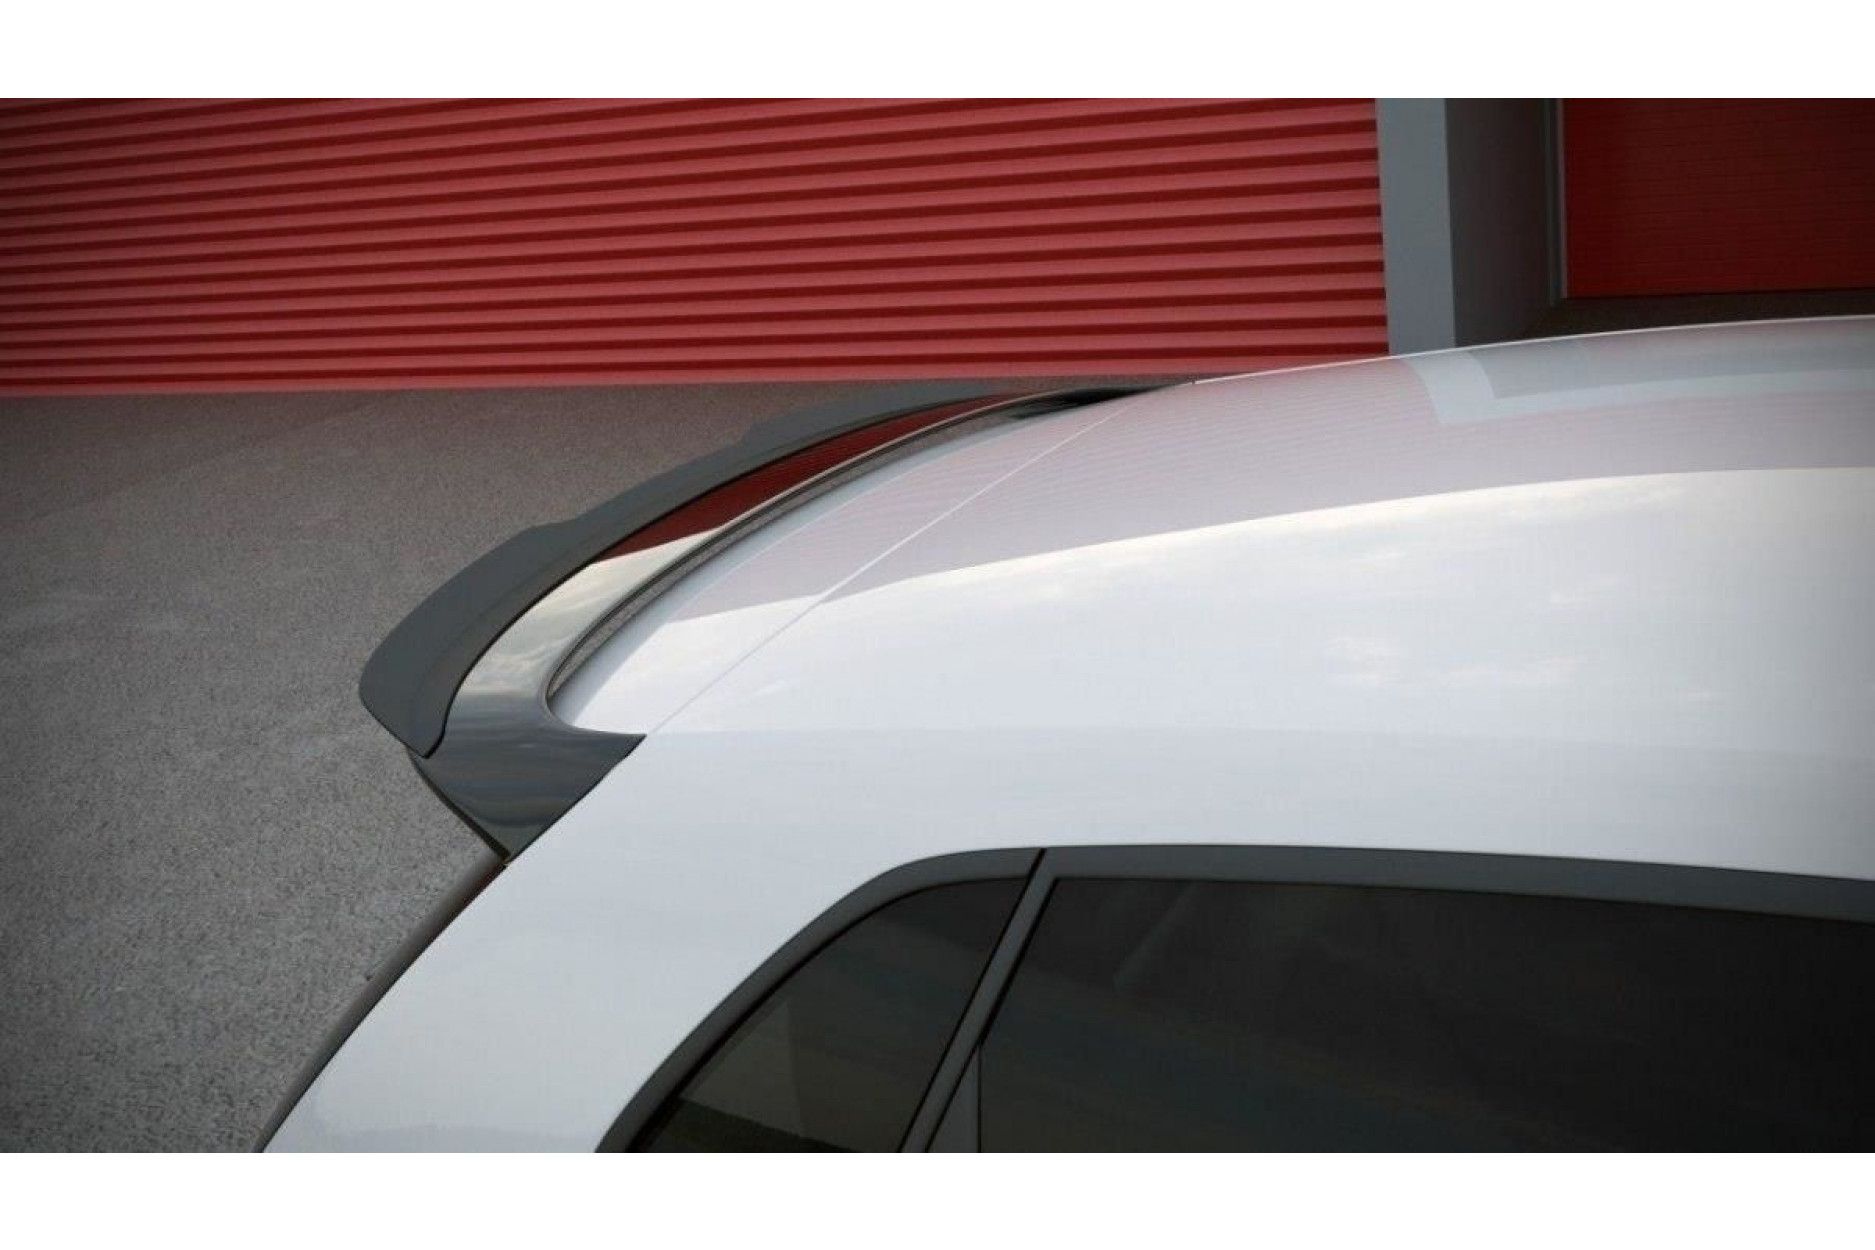 Maxton Design ABS Frontlippe für Volkswagen Polo 6R|6C GTI|R schwarz  hochglanz